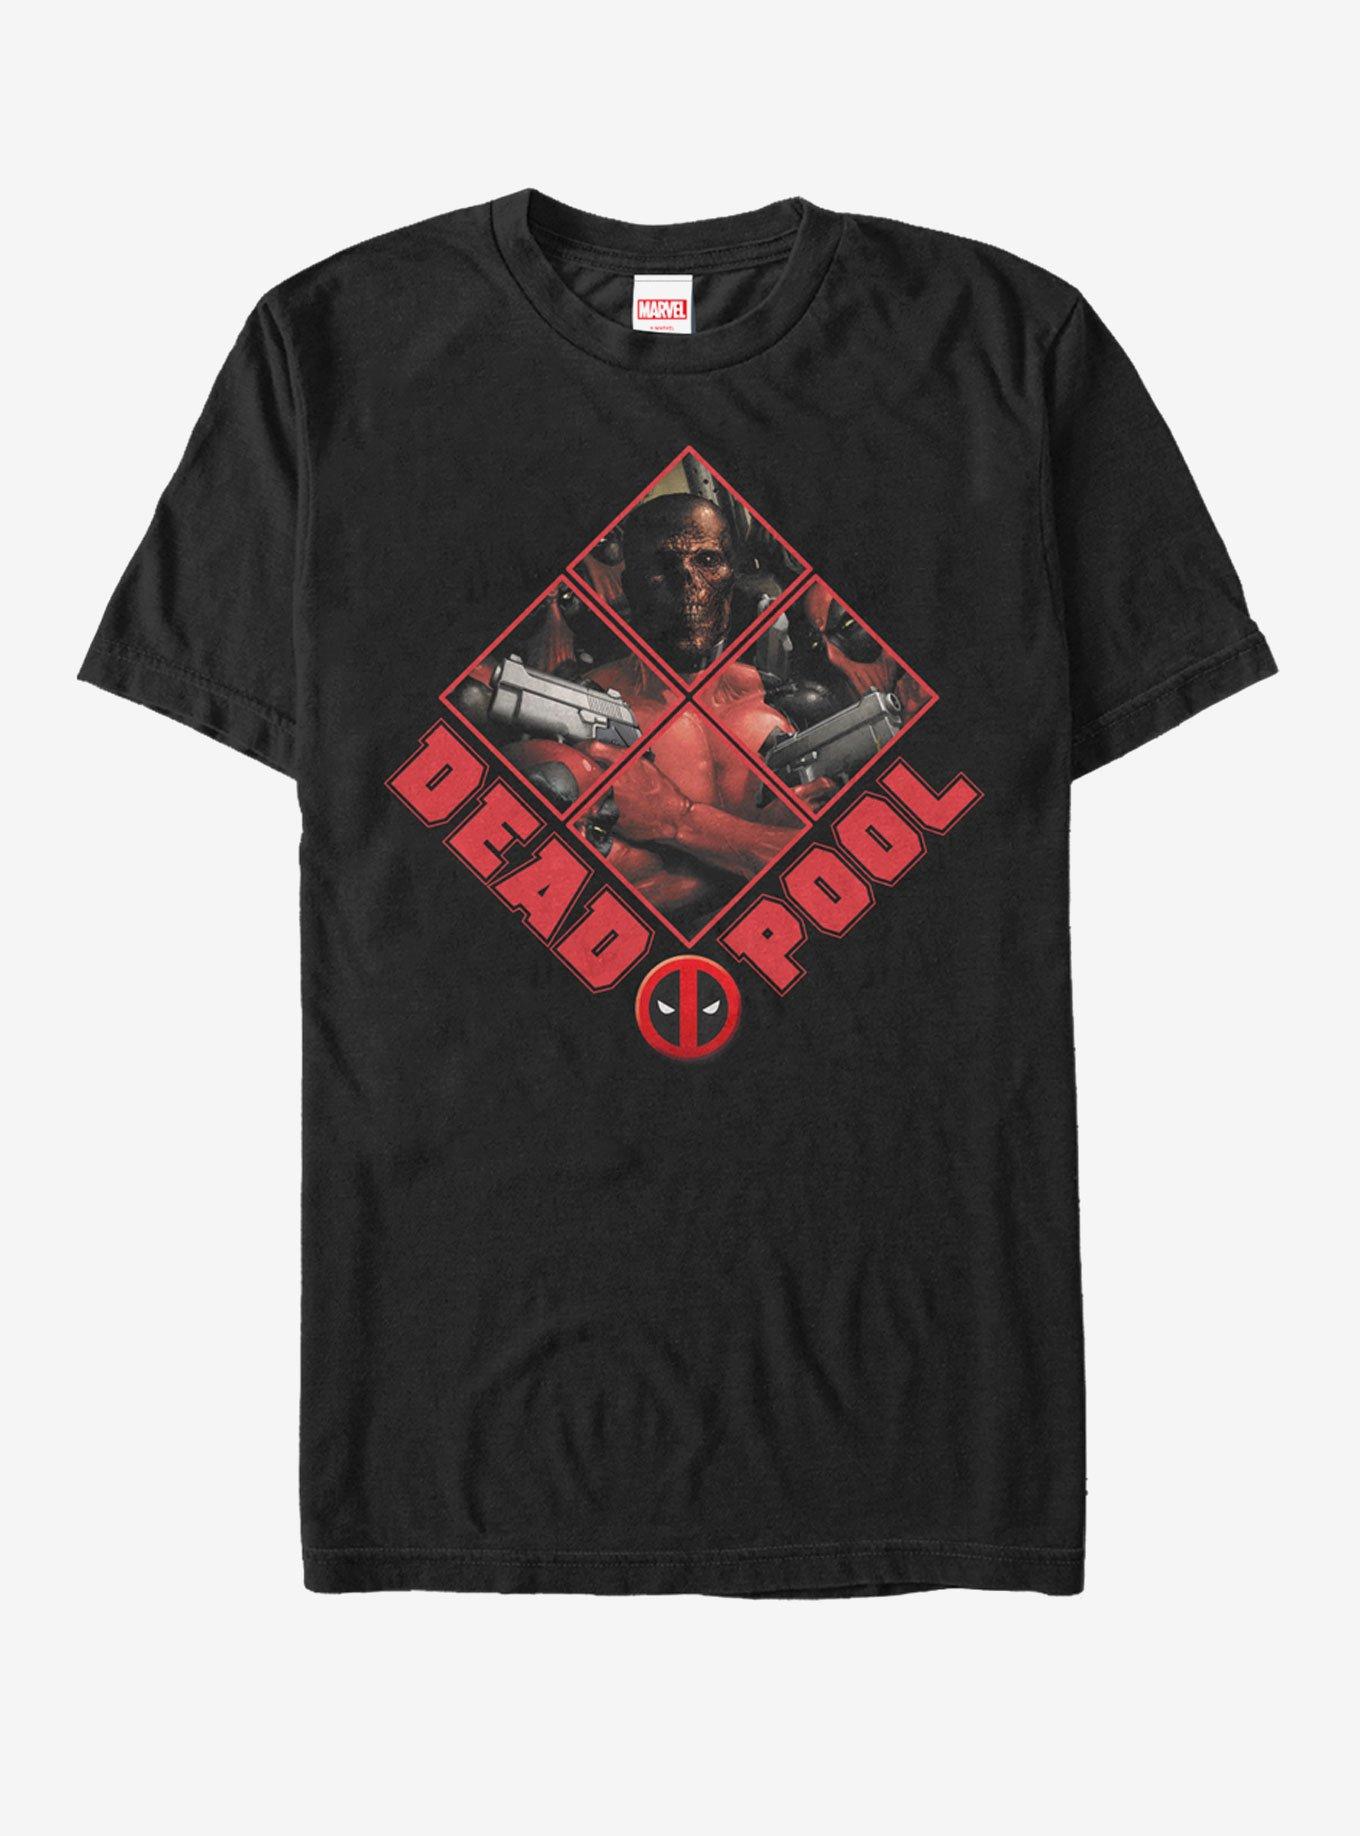 Marvel Deadpool Unmasked T-Shirt, BLACK, hi-res